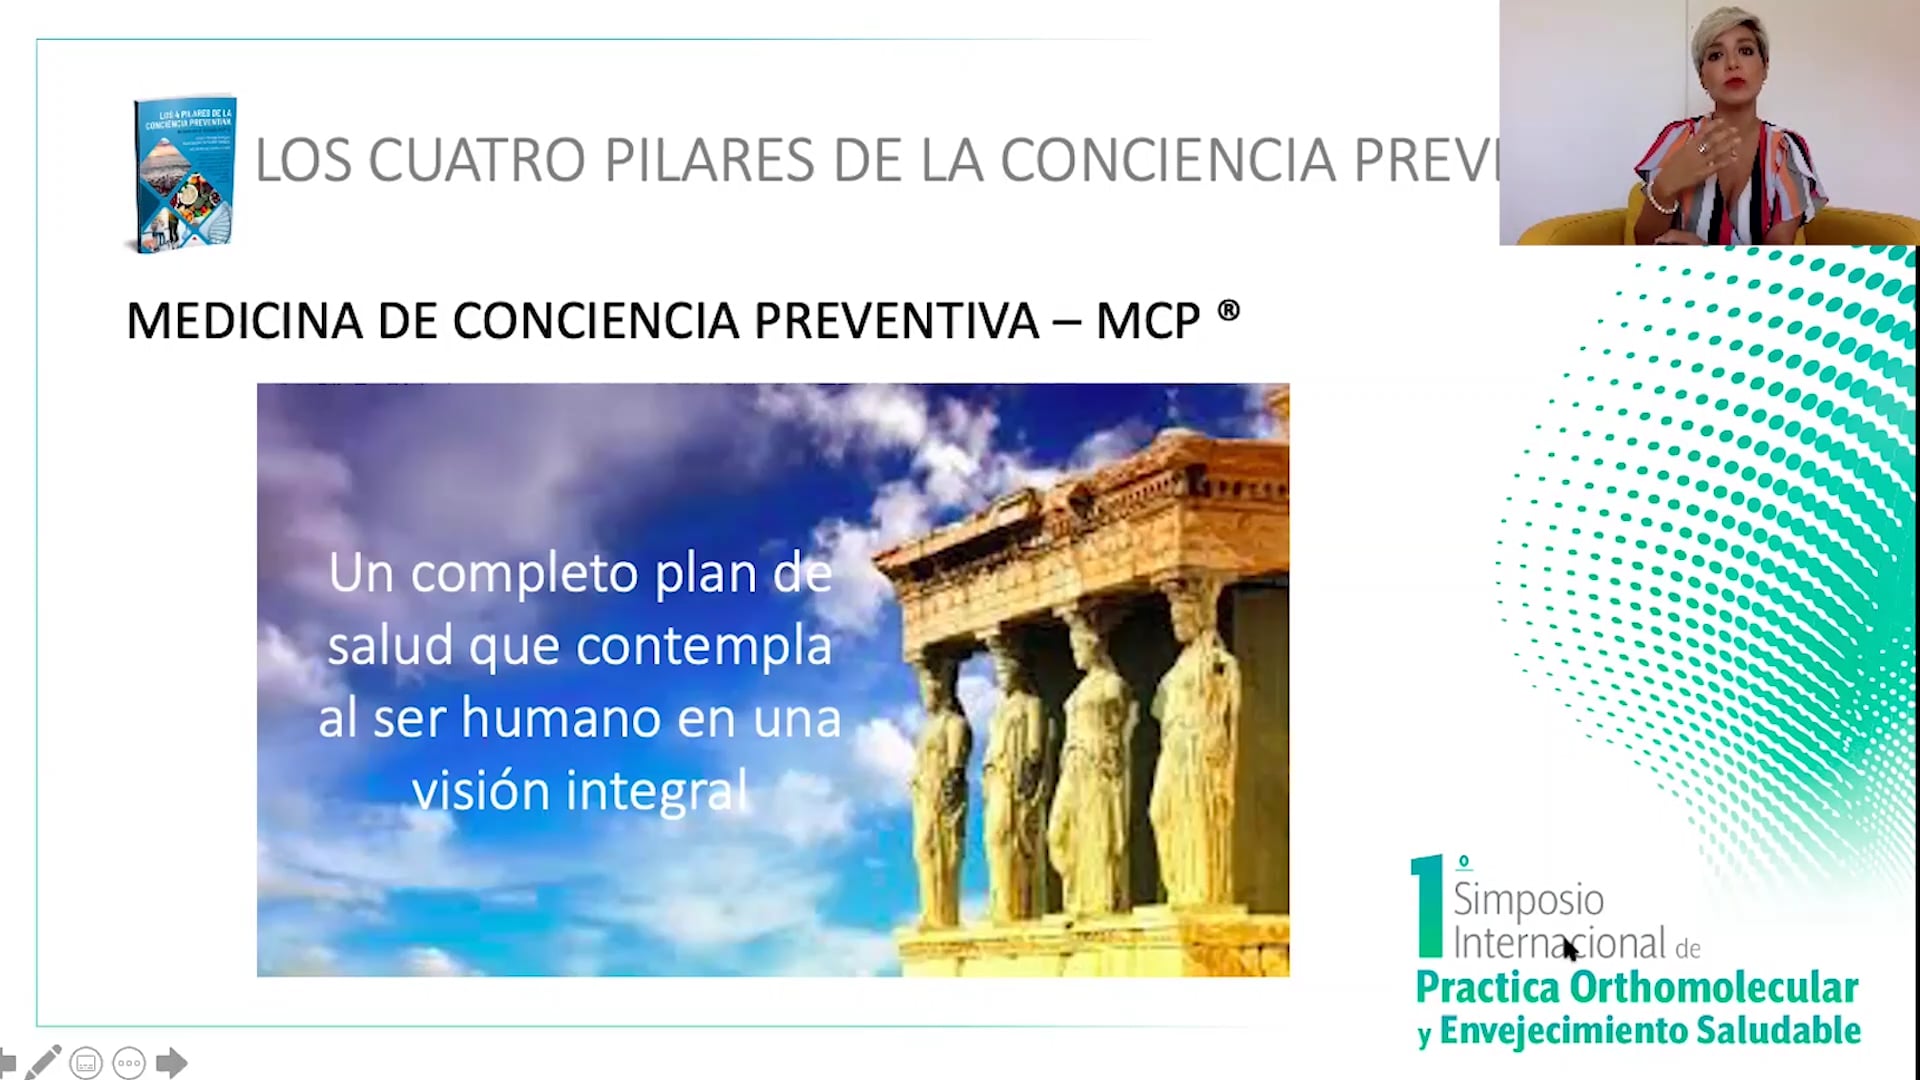 Los cuatros pilares de la conciencia preventiva.